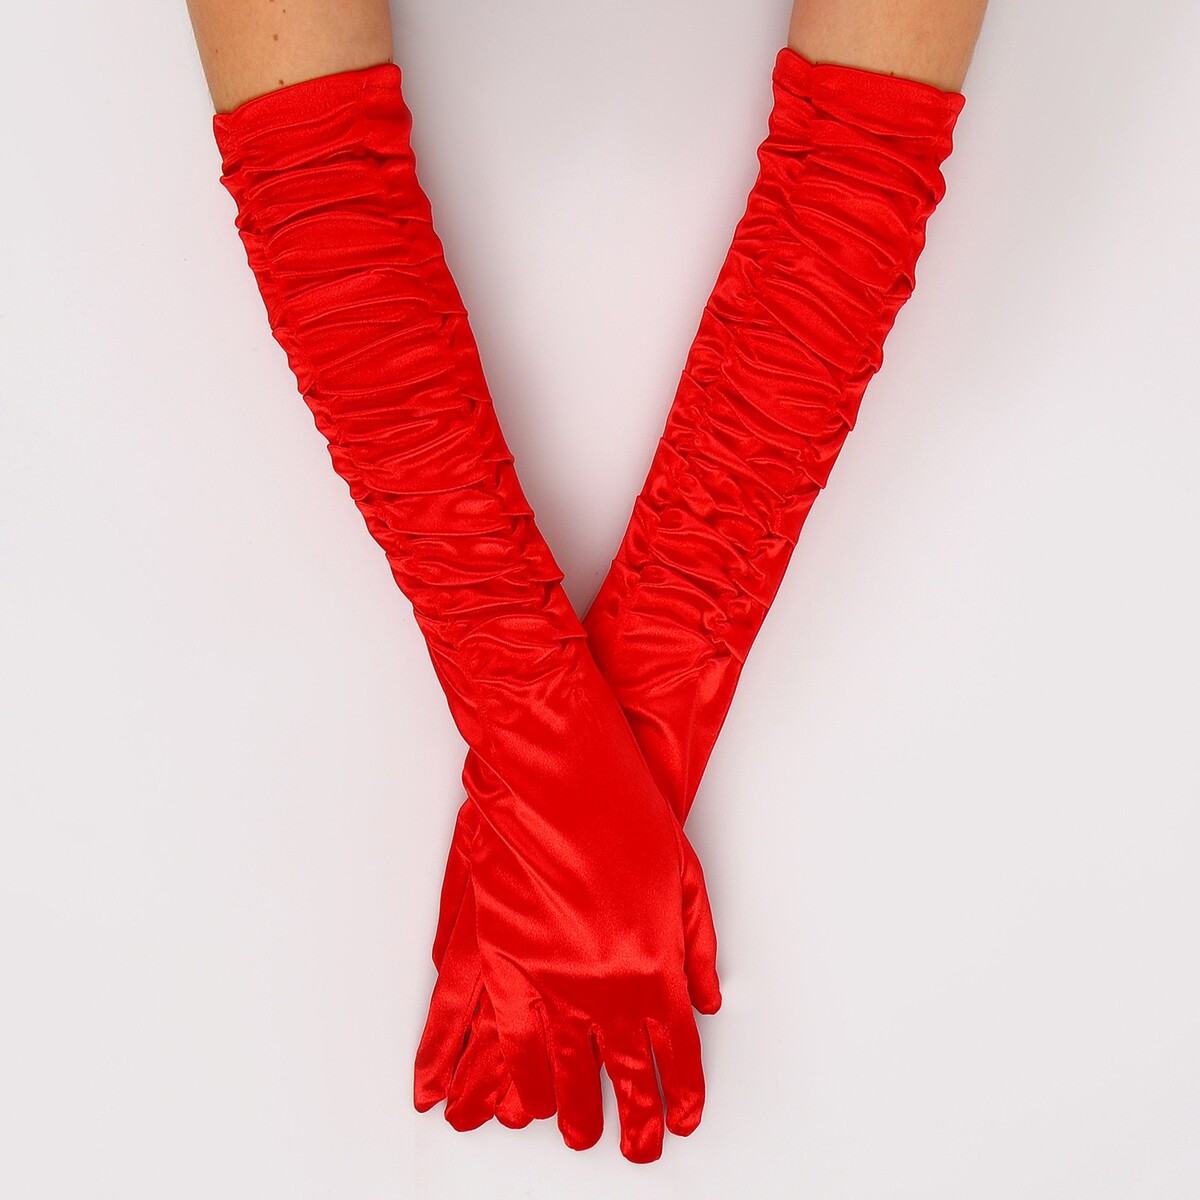 Карнавальный аксессуар - перчатки со сборкой, цвет красный аксессуар для карнавала новогодняя сказка кокошник боярушка 28x0 3x28см красный